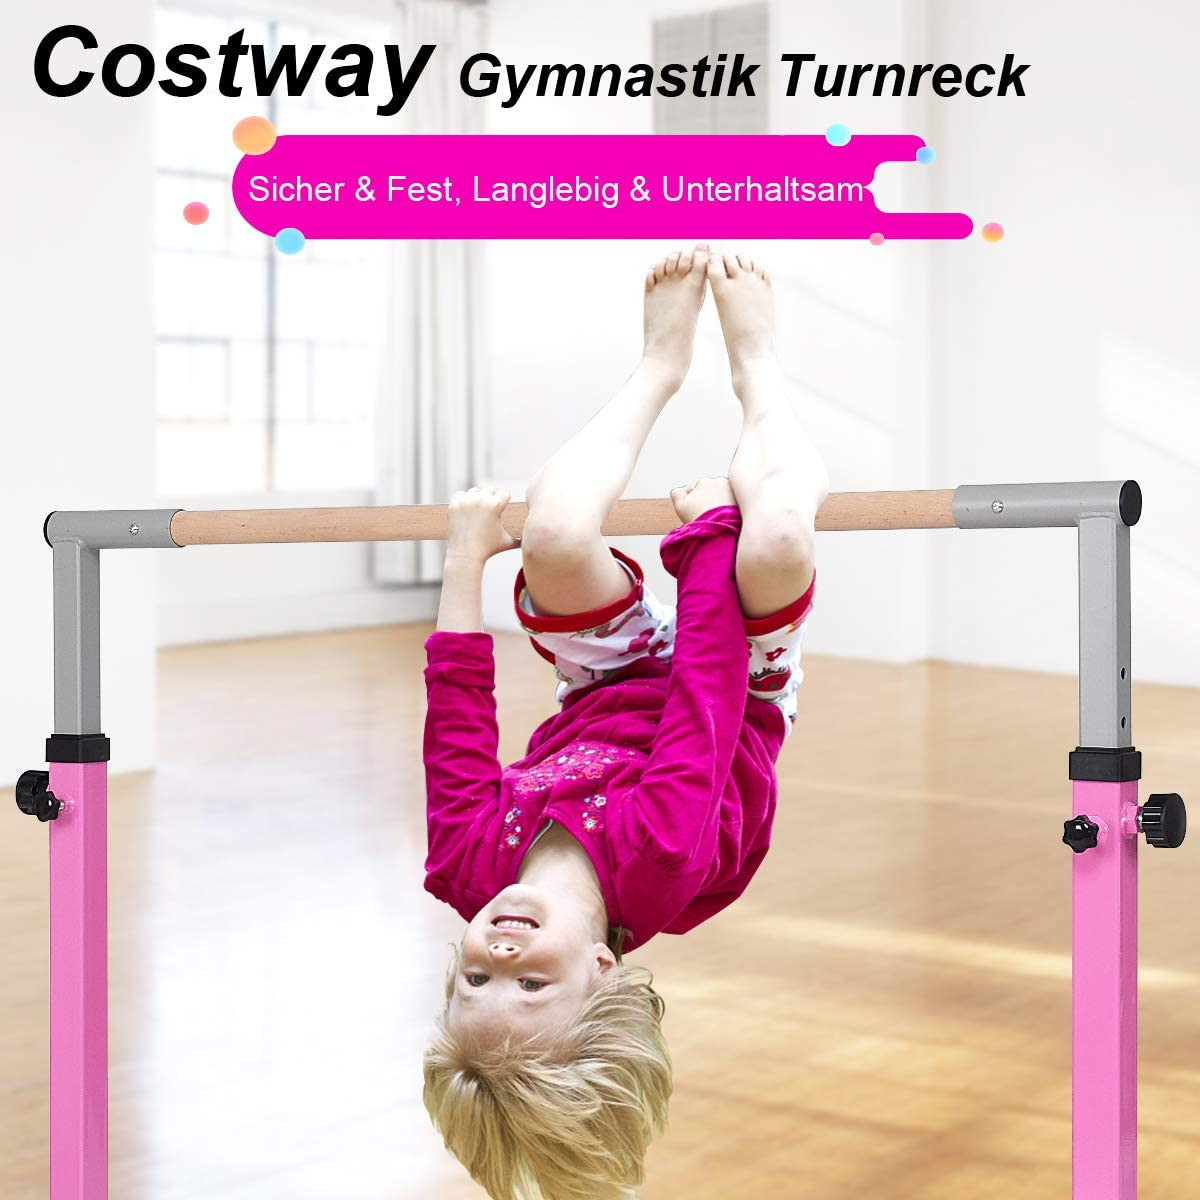 Turnreck COSTWAY Gymnastik Reckanlage, Rosa